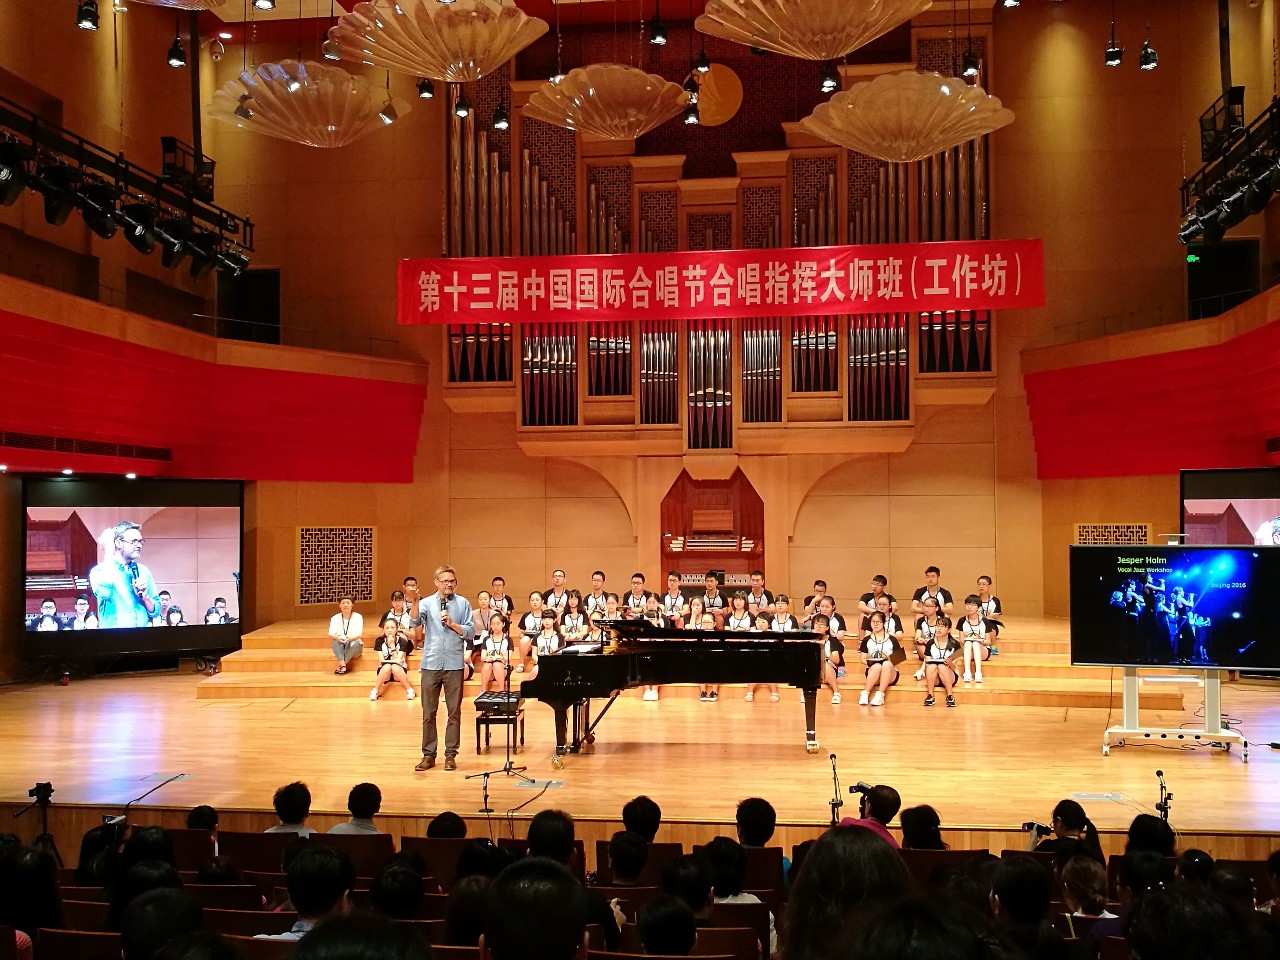 第十三届中国国际合唱节合唱指挥大师班